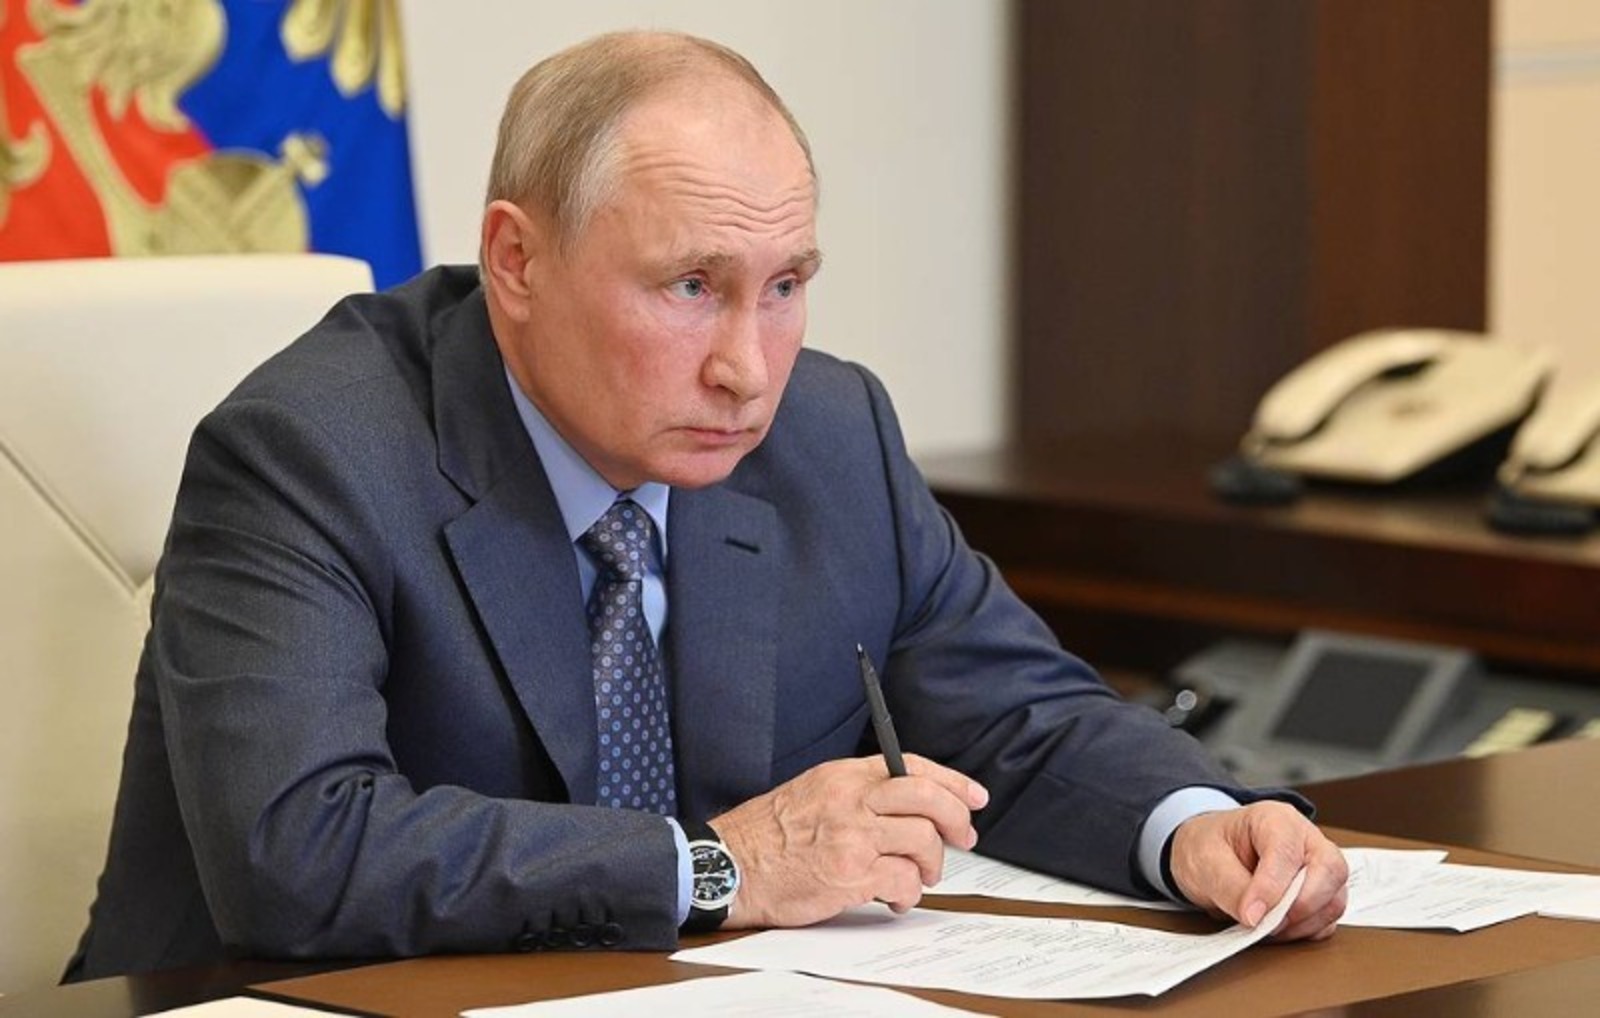 Путин призвал не допускать необоснованного завышения цен при строительстве дорог